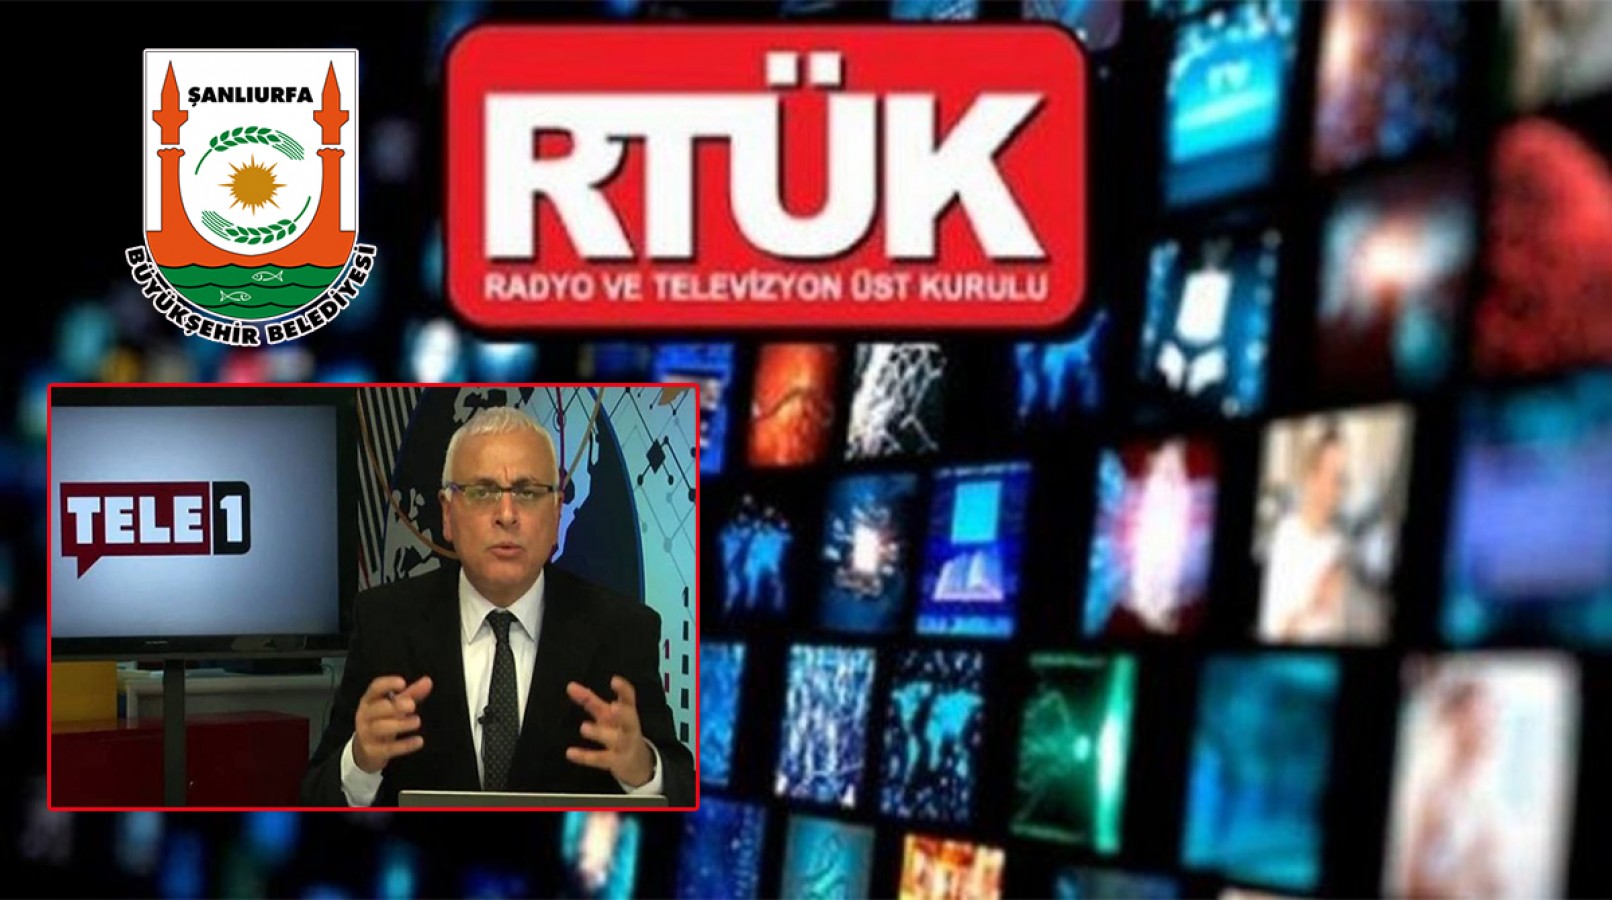 Şanlıurfa Büyükşehir Belediyesinin eleştirildiği televizyon kanalına para cezası;